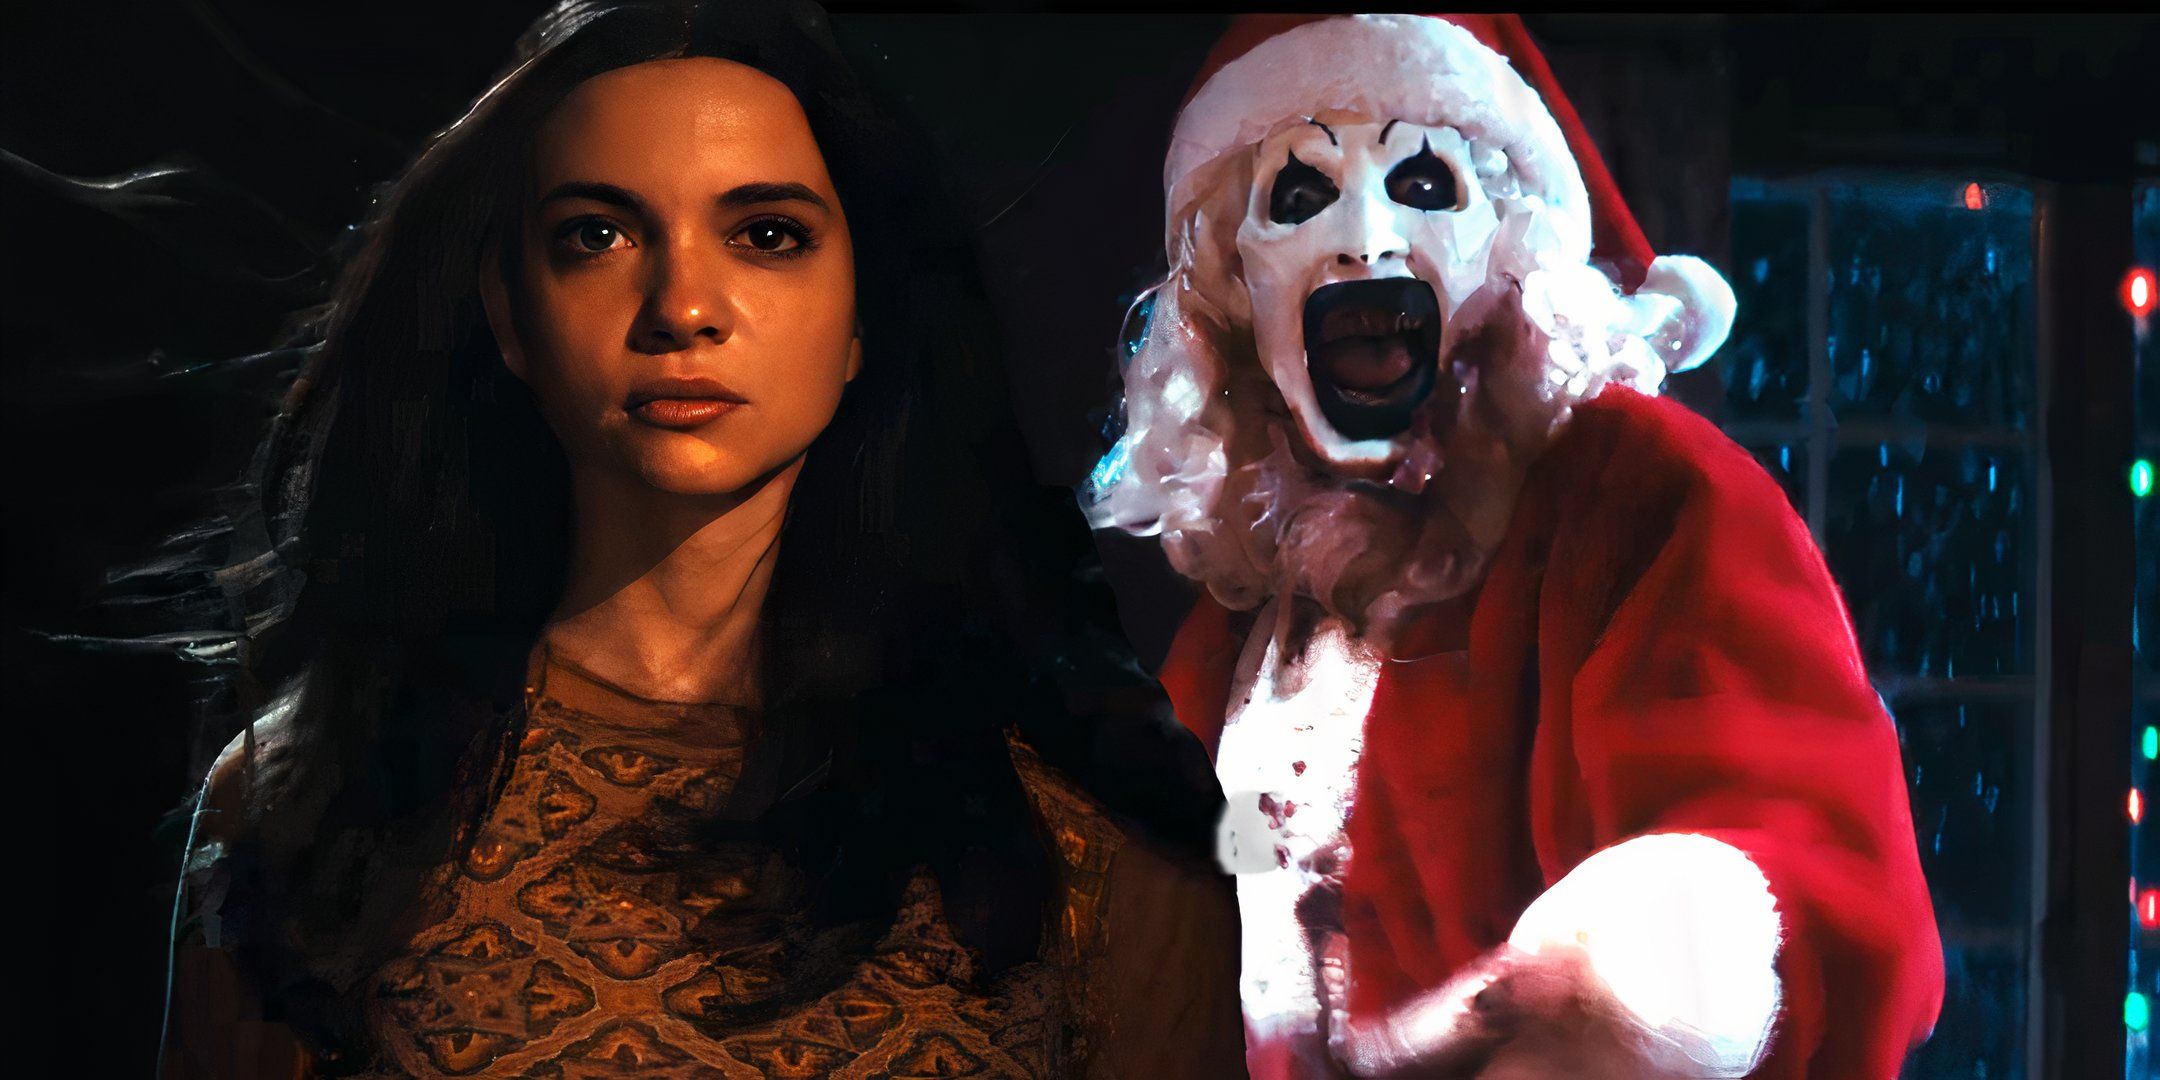 Tráiler de Terrifier 3: Art, el payaso, acecha a Sienna con ángeles de nieve sangrientos en la secuela navideña